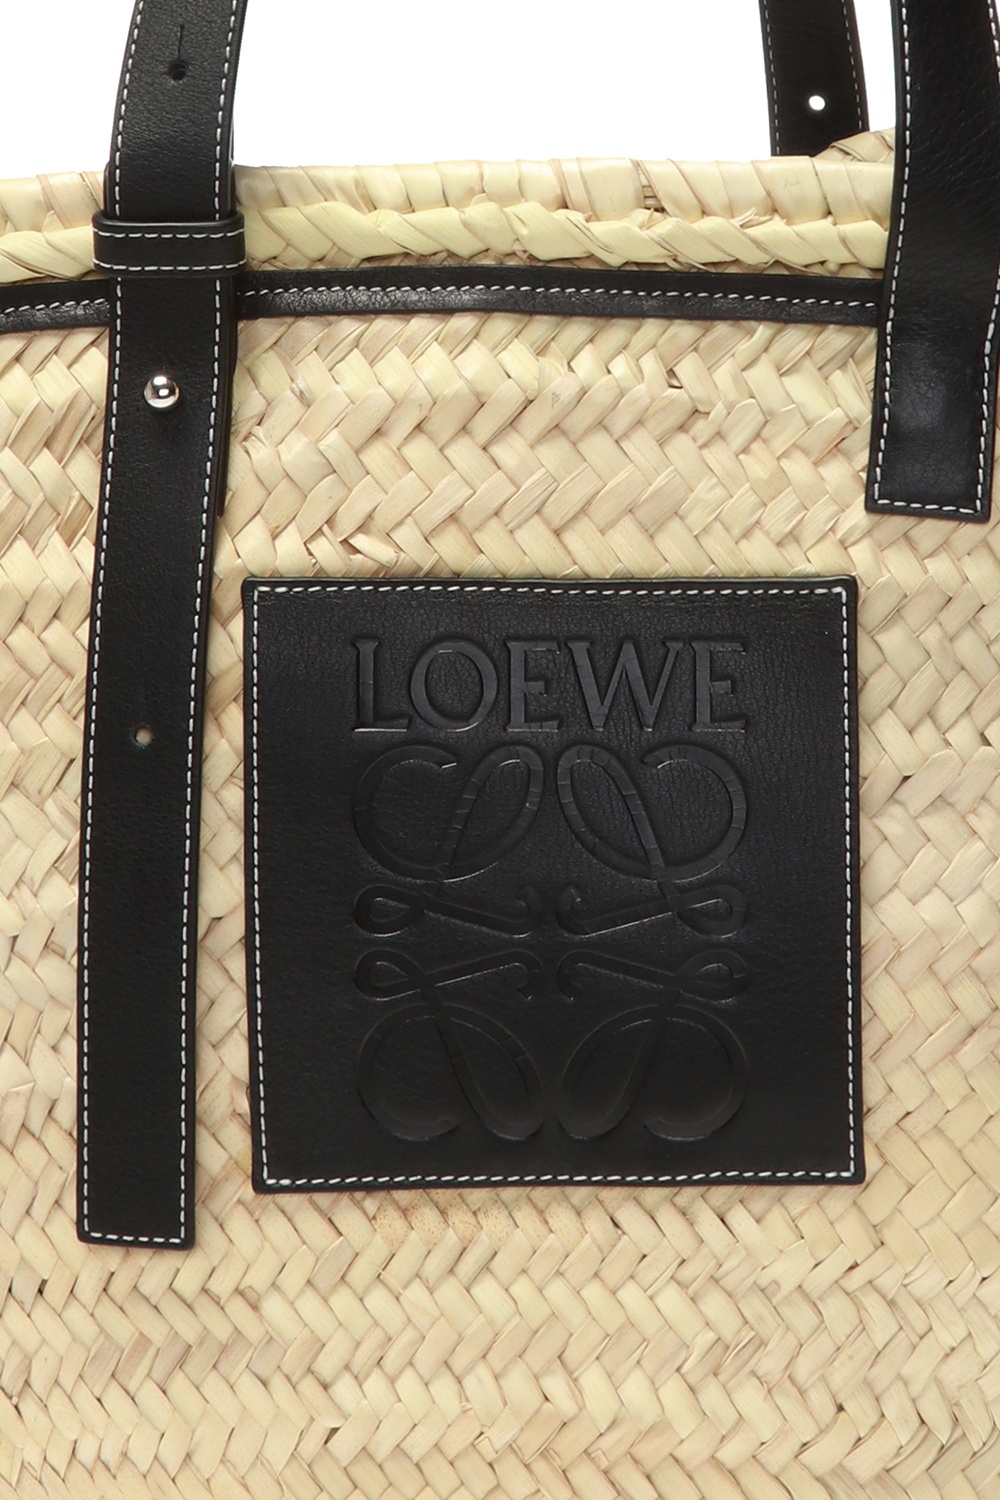 Loewe shopper bag | Women's Bags | IetpShops